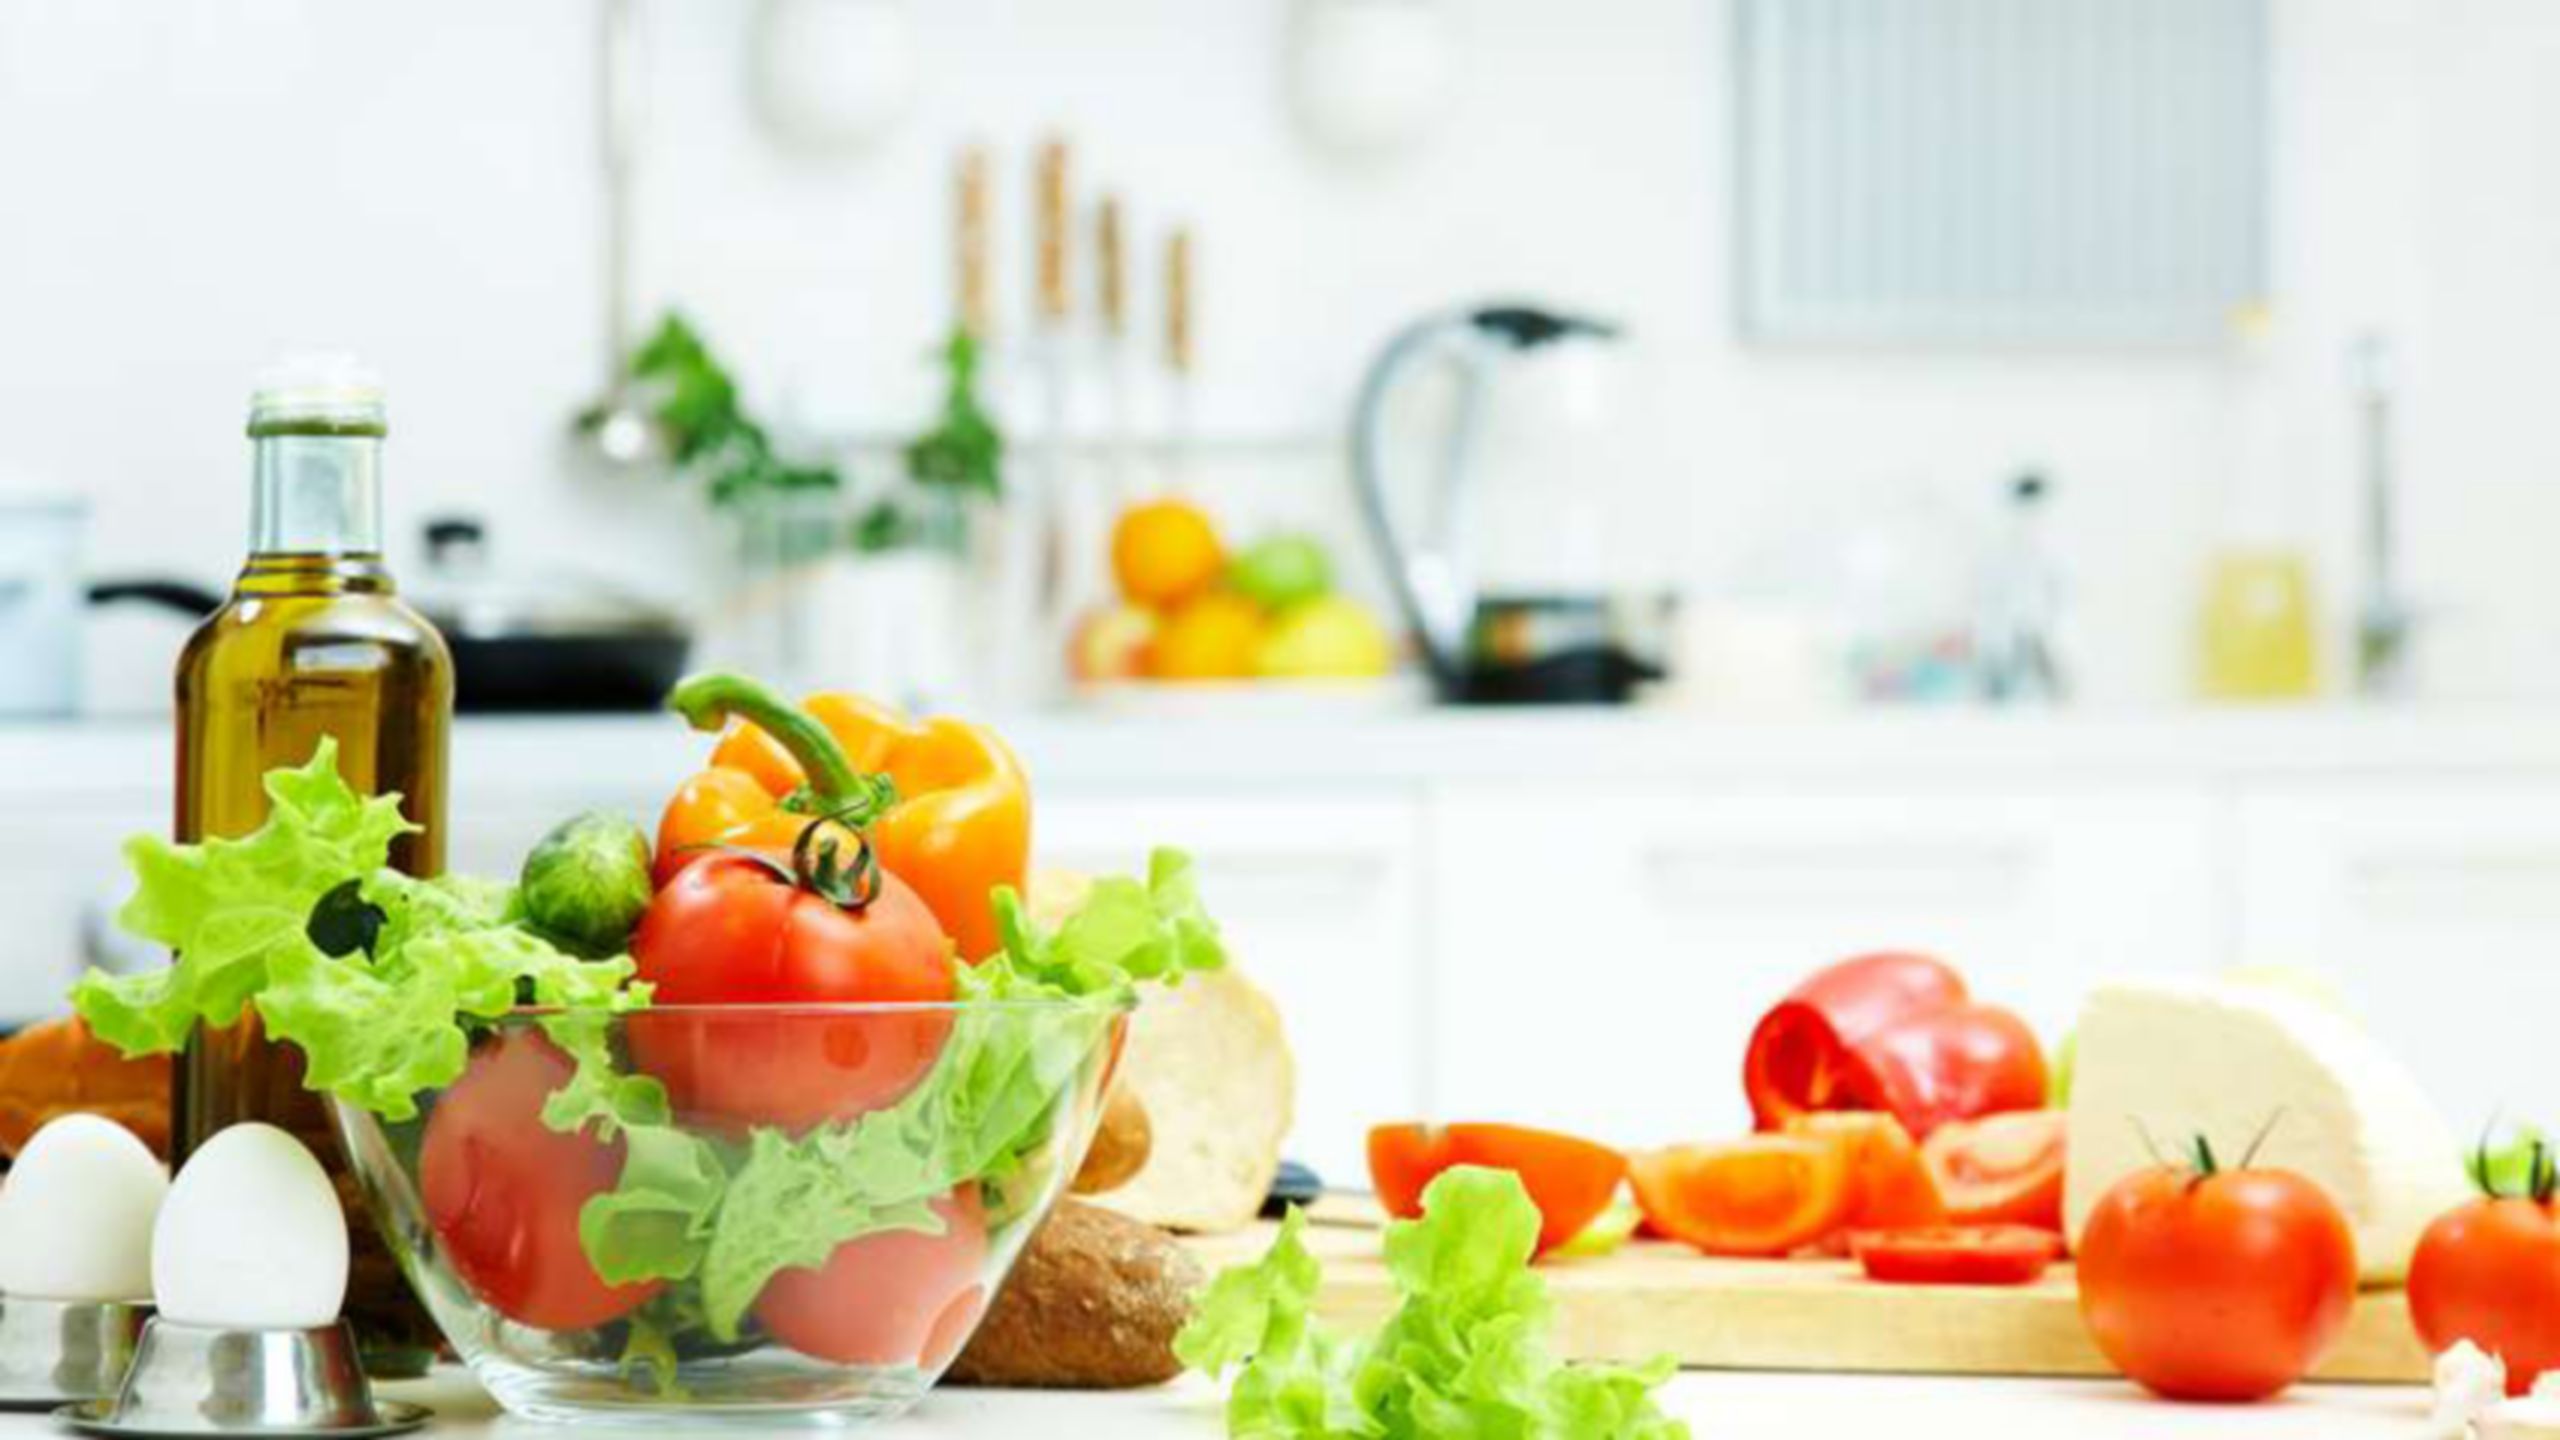 Ingredientes para fazer uma salada, incluindo tomates, alface e ovos no balcão de uma cozinha